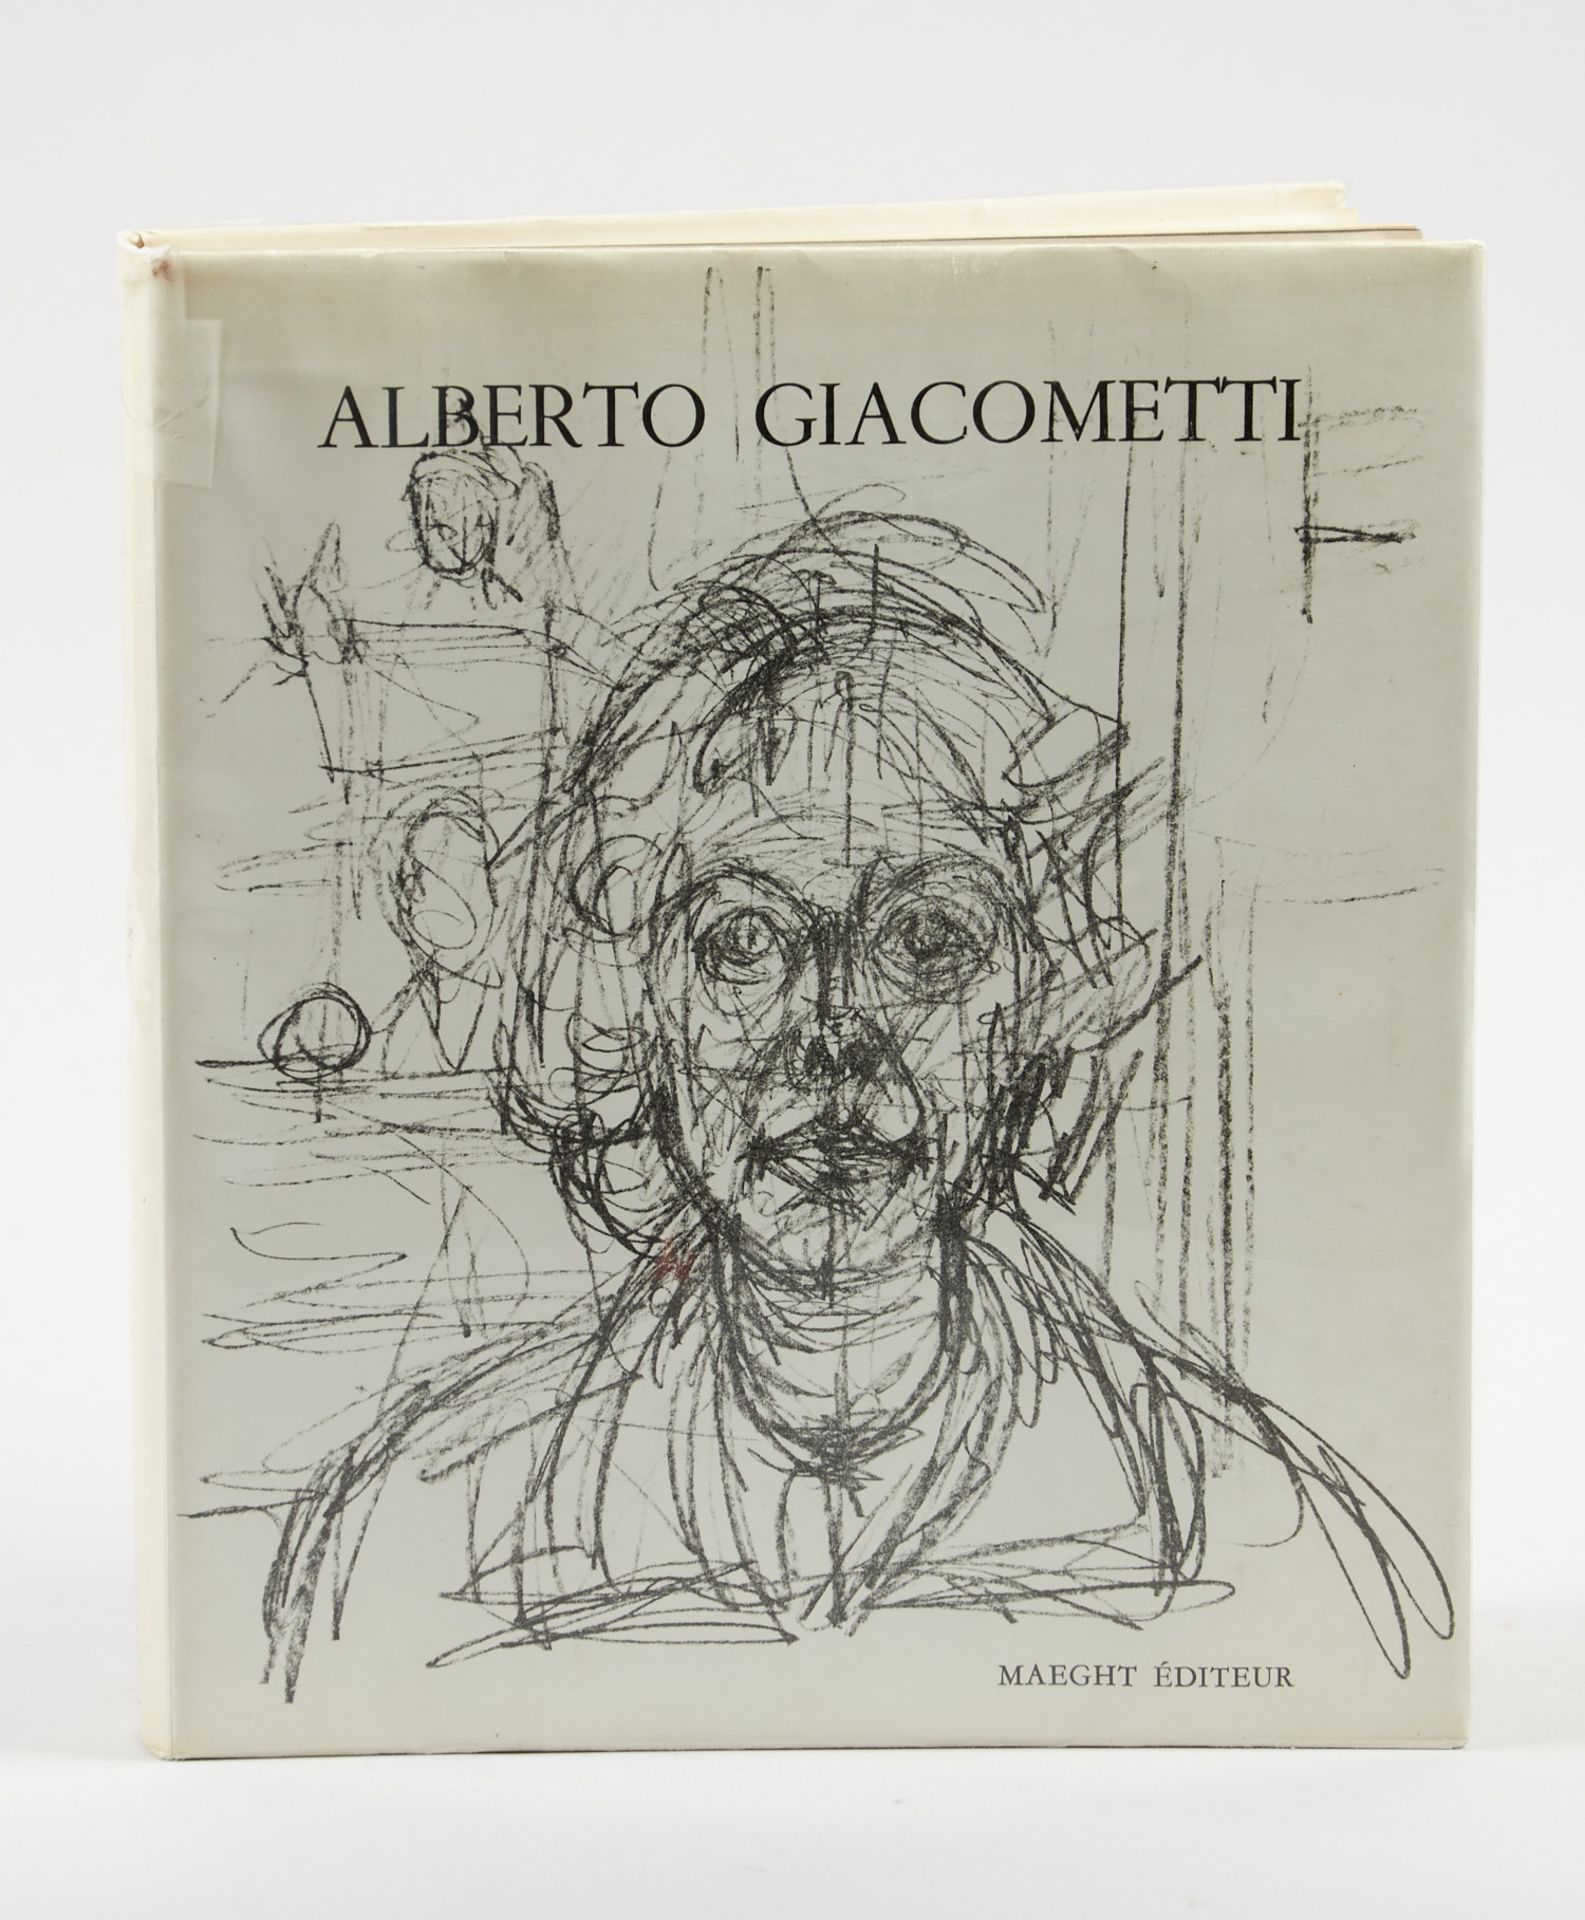 Giacometti Dupin, J., Alberto Giacometti. Paris, Maeght, (1963). 4°. Mit 2 Lithographien (inkl.